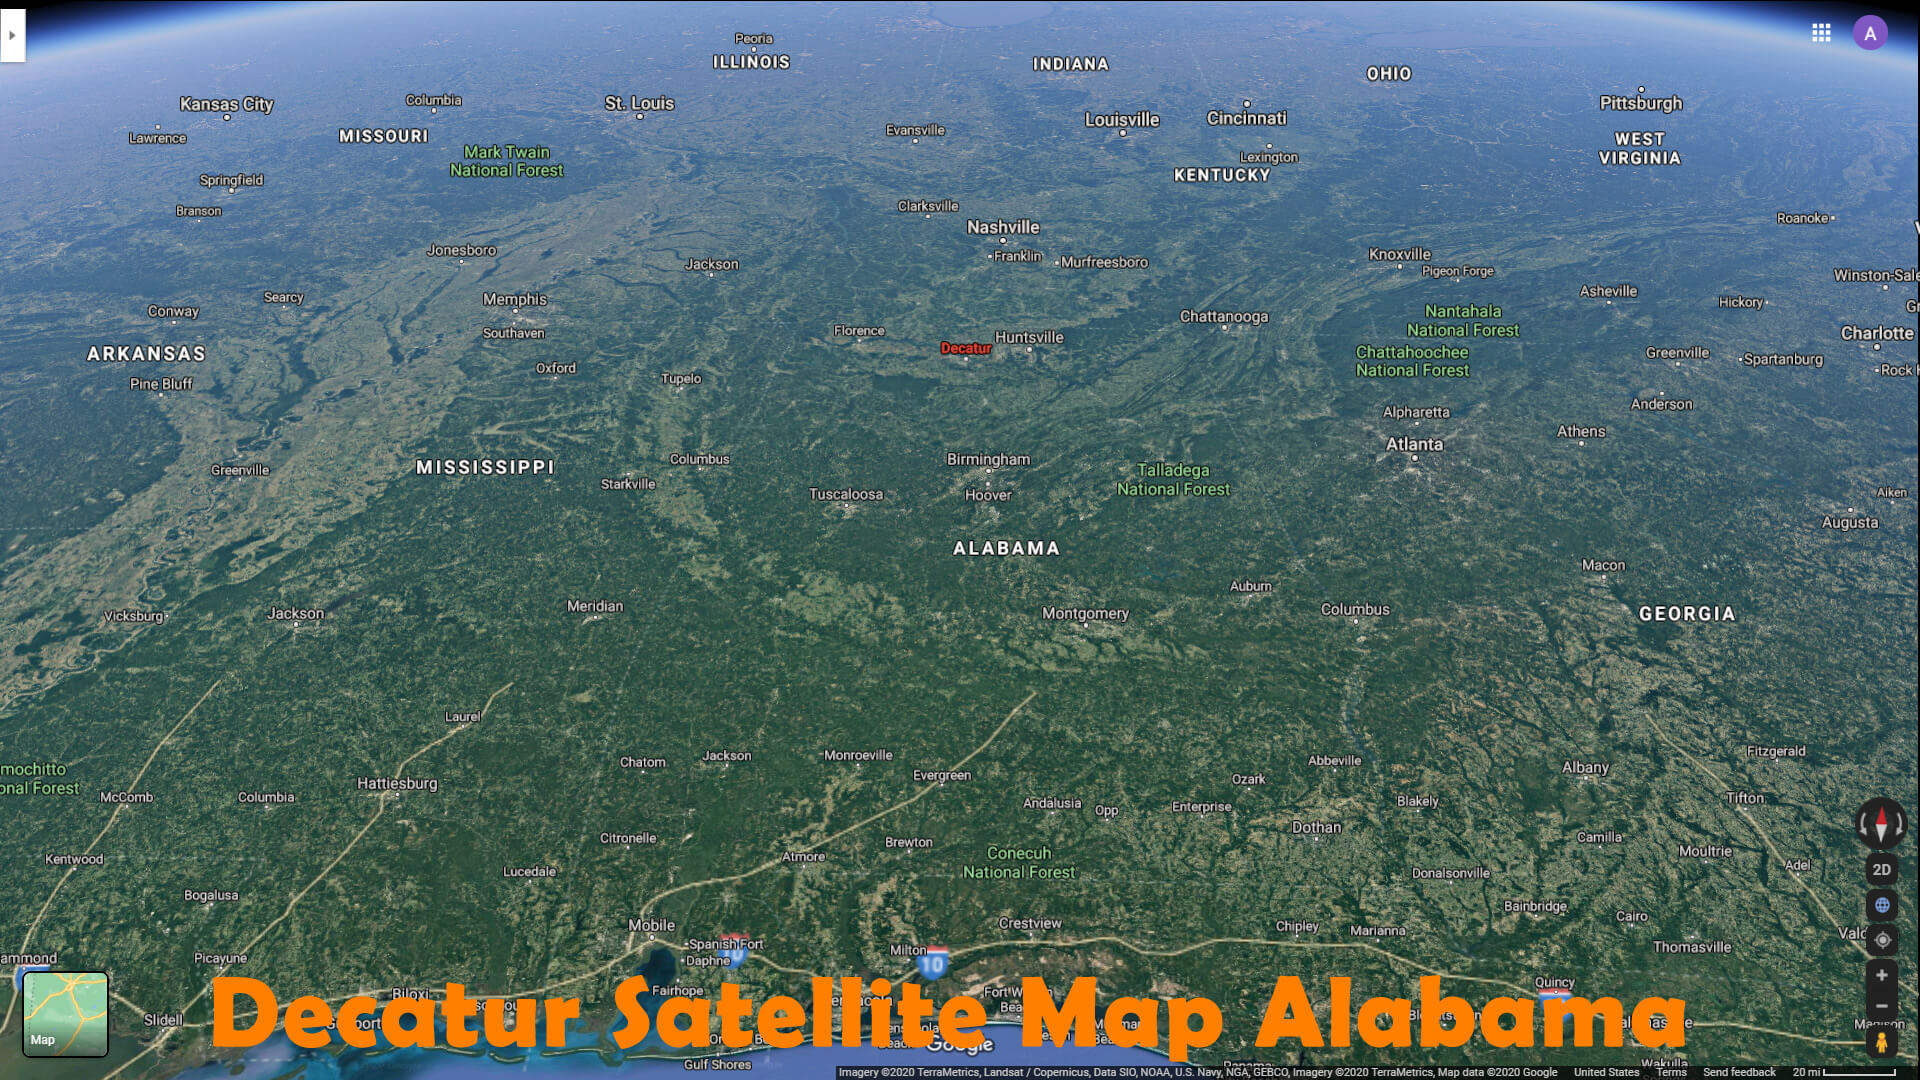 Decatur Satellite Carte Alabama